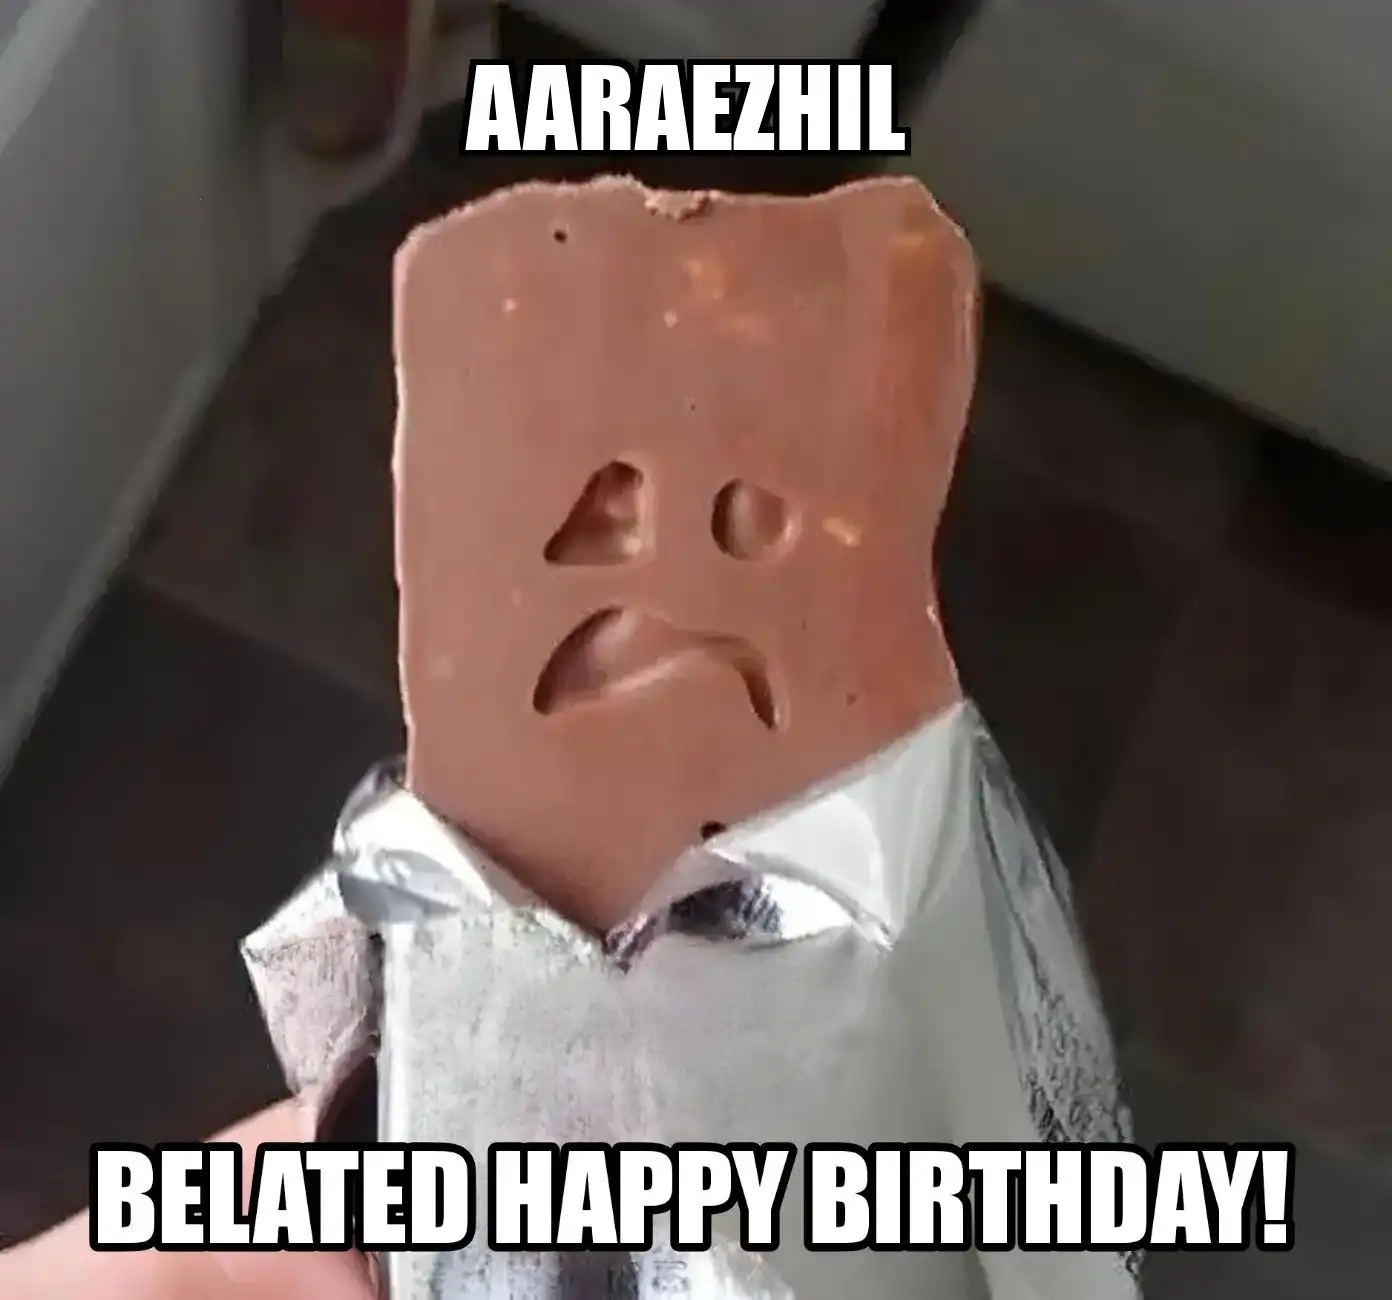 Happy Birthday Aaraezhil Belated Happy Birthday Meme